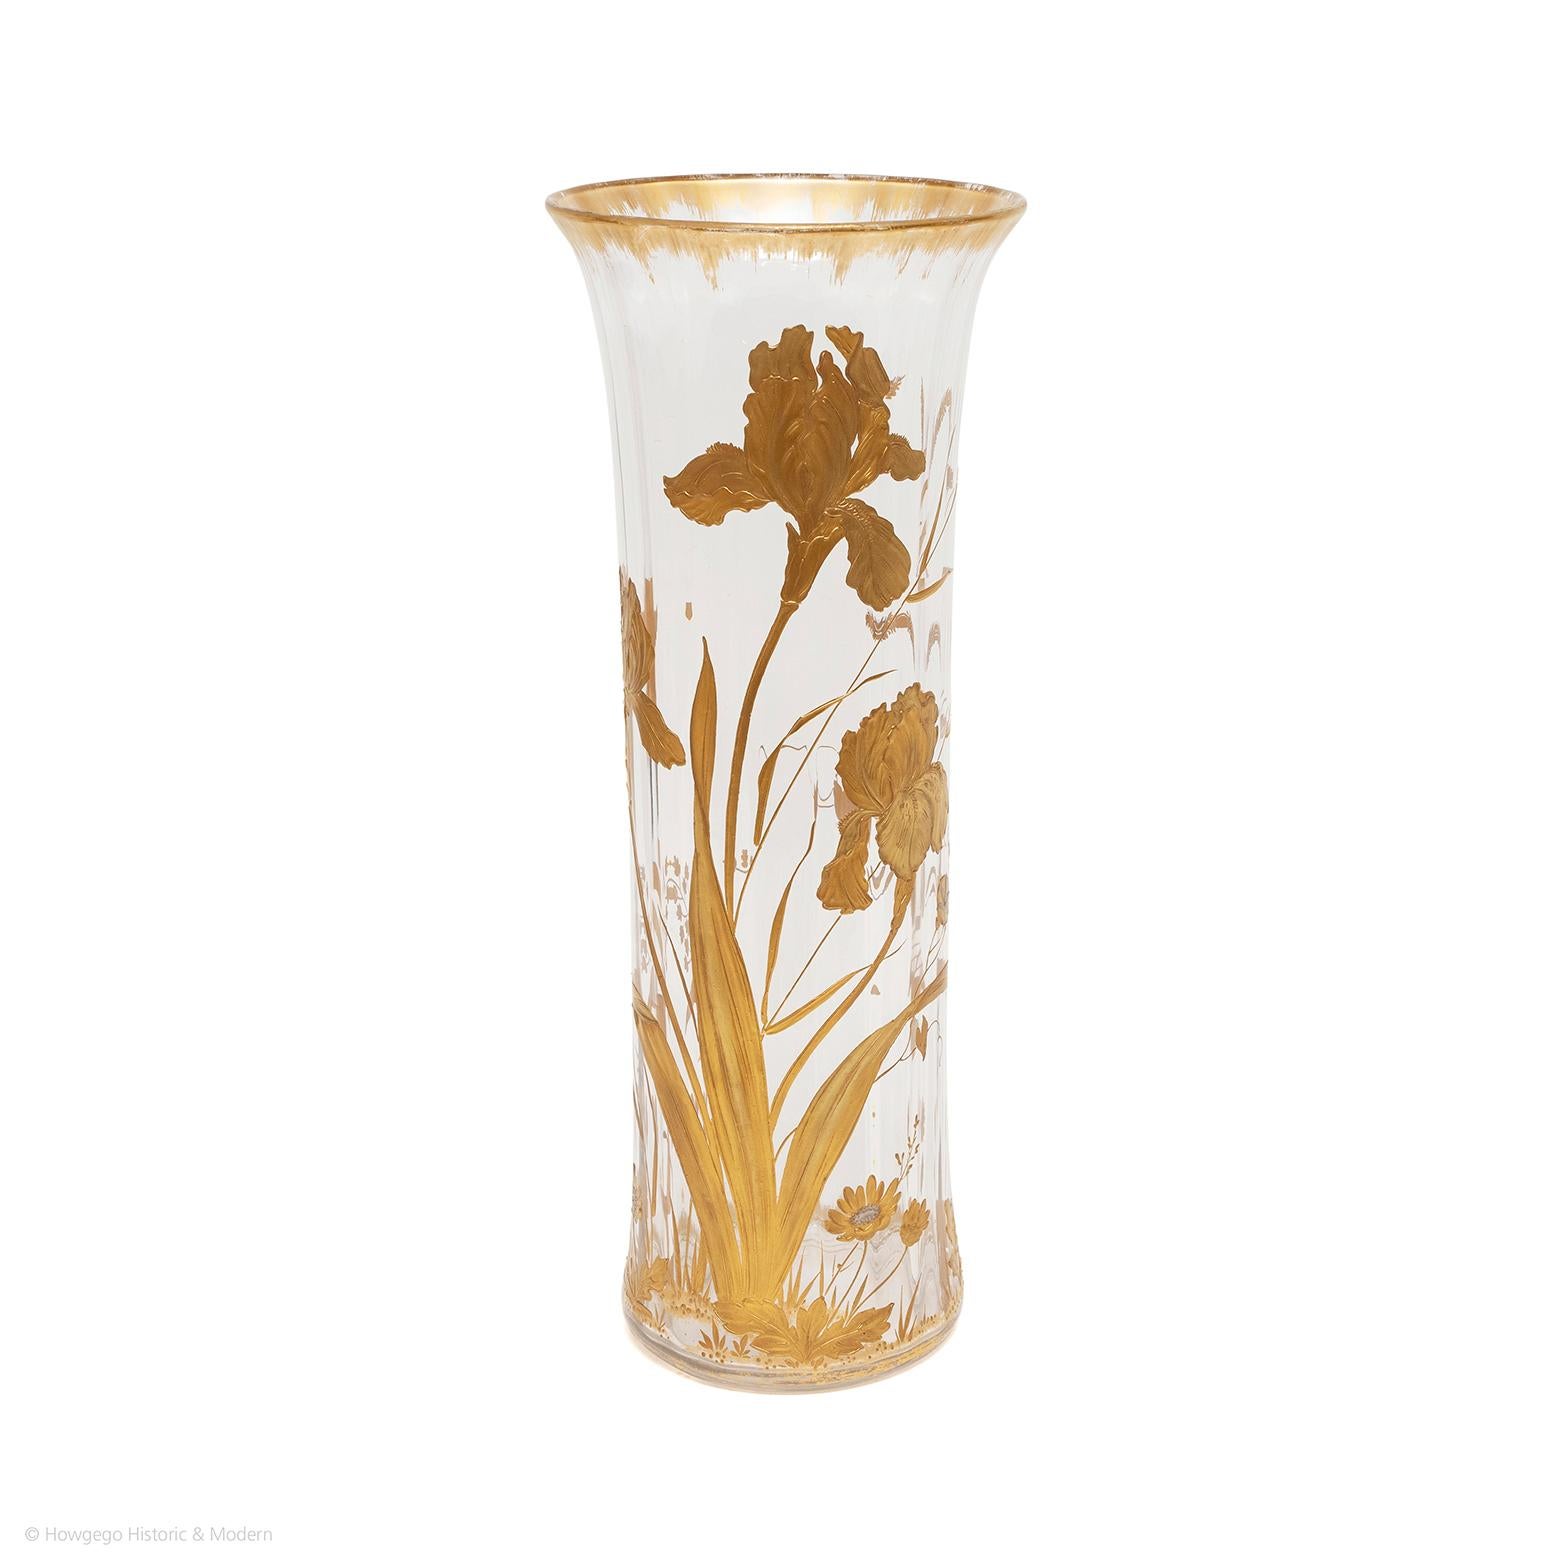 Grand vase en verre strié français en cristal de St Louis, décoré de fleurs d'iris émaillées d'or. Les sommets sont ornés d'une fine plume dorée. La base du vase est ornée d'un anneau doré et de fleurs au sol, un grand iris stylisé décorant